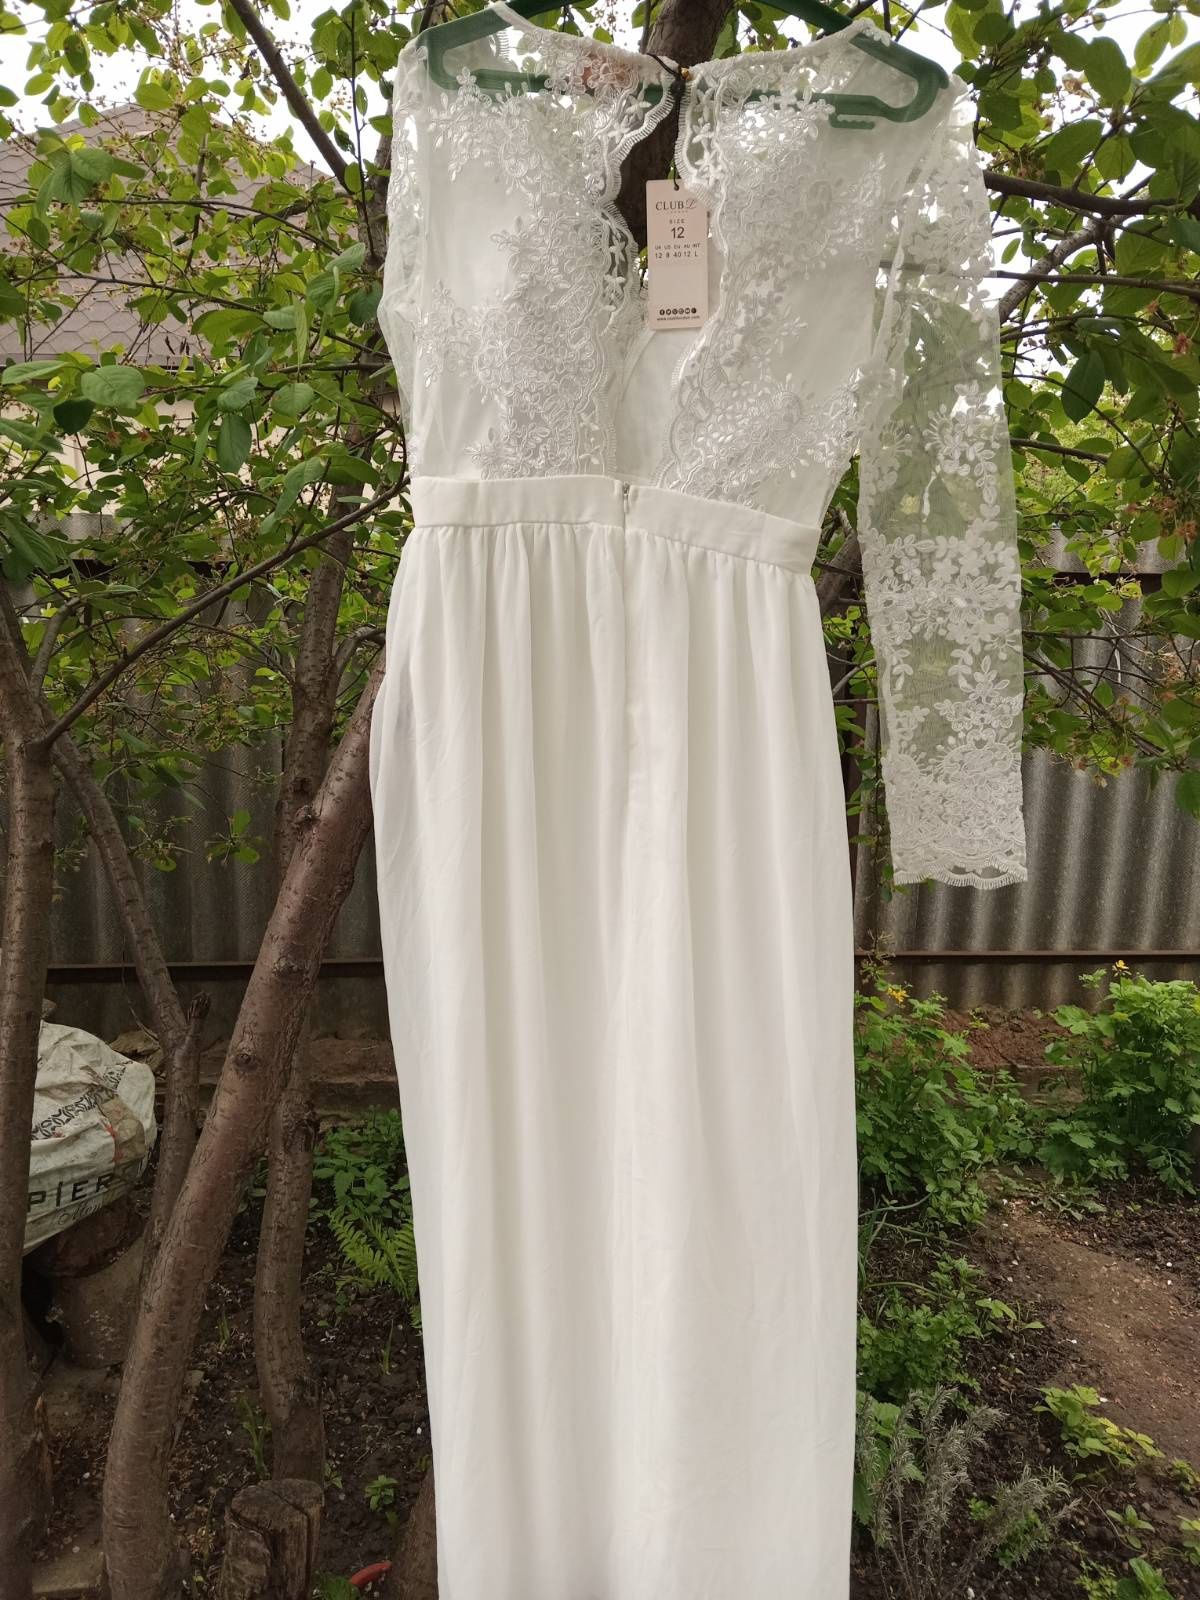 Продам Свадебное платье новое красивое елегантное размер 46